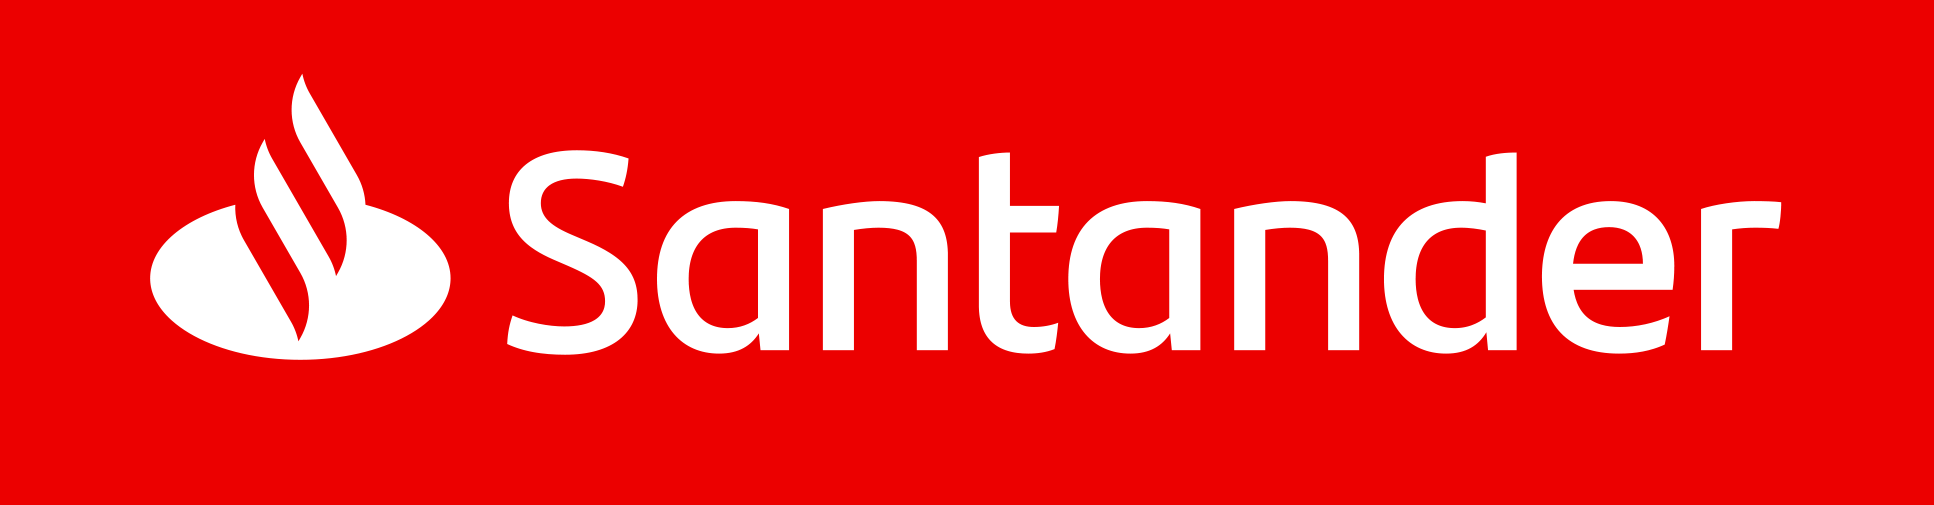 Santander Bank Polska wspiera Zielony Zwrot TAURONA. Na polski rynek trafią pierwsze obligacje Zrównoważonego Rozwoju 